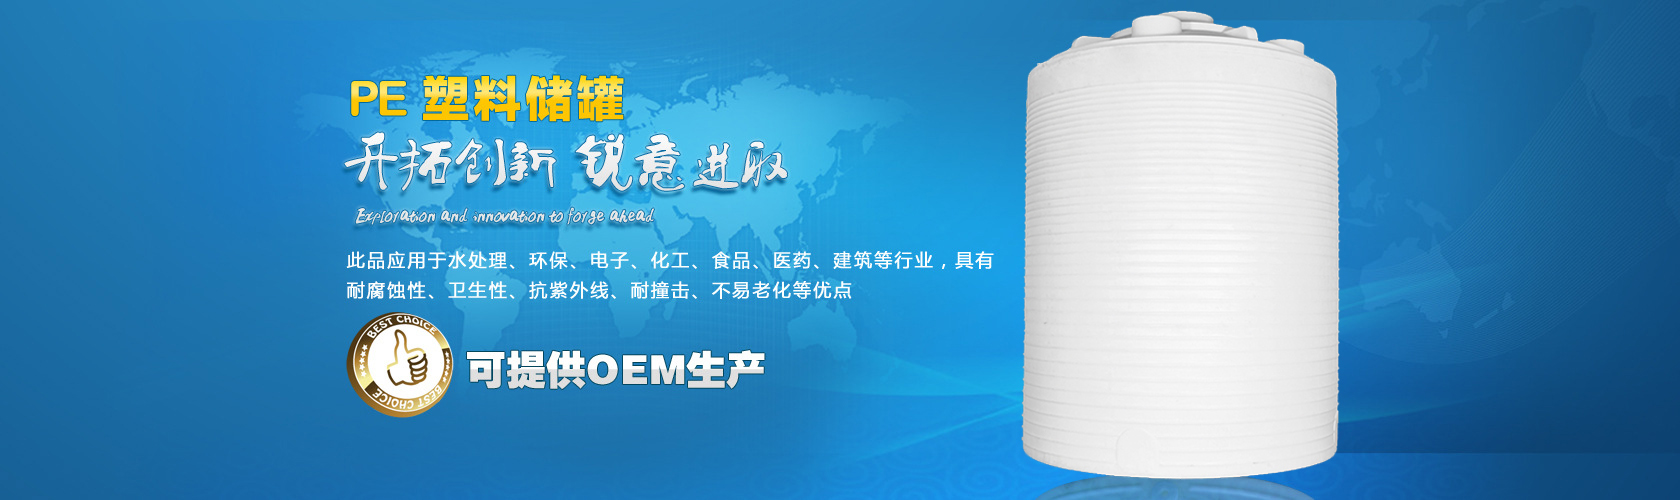 塑料储罐湖南邵阳15吨/15方塑料储罐塑料储罐厂家价格